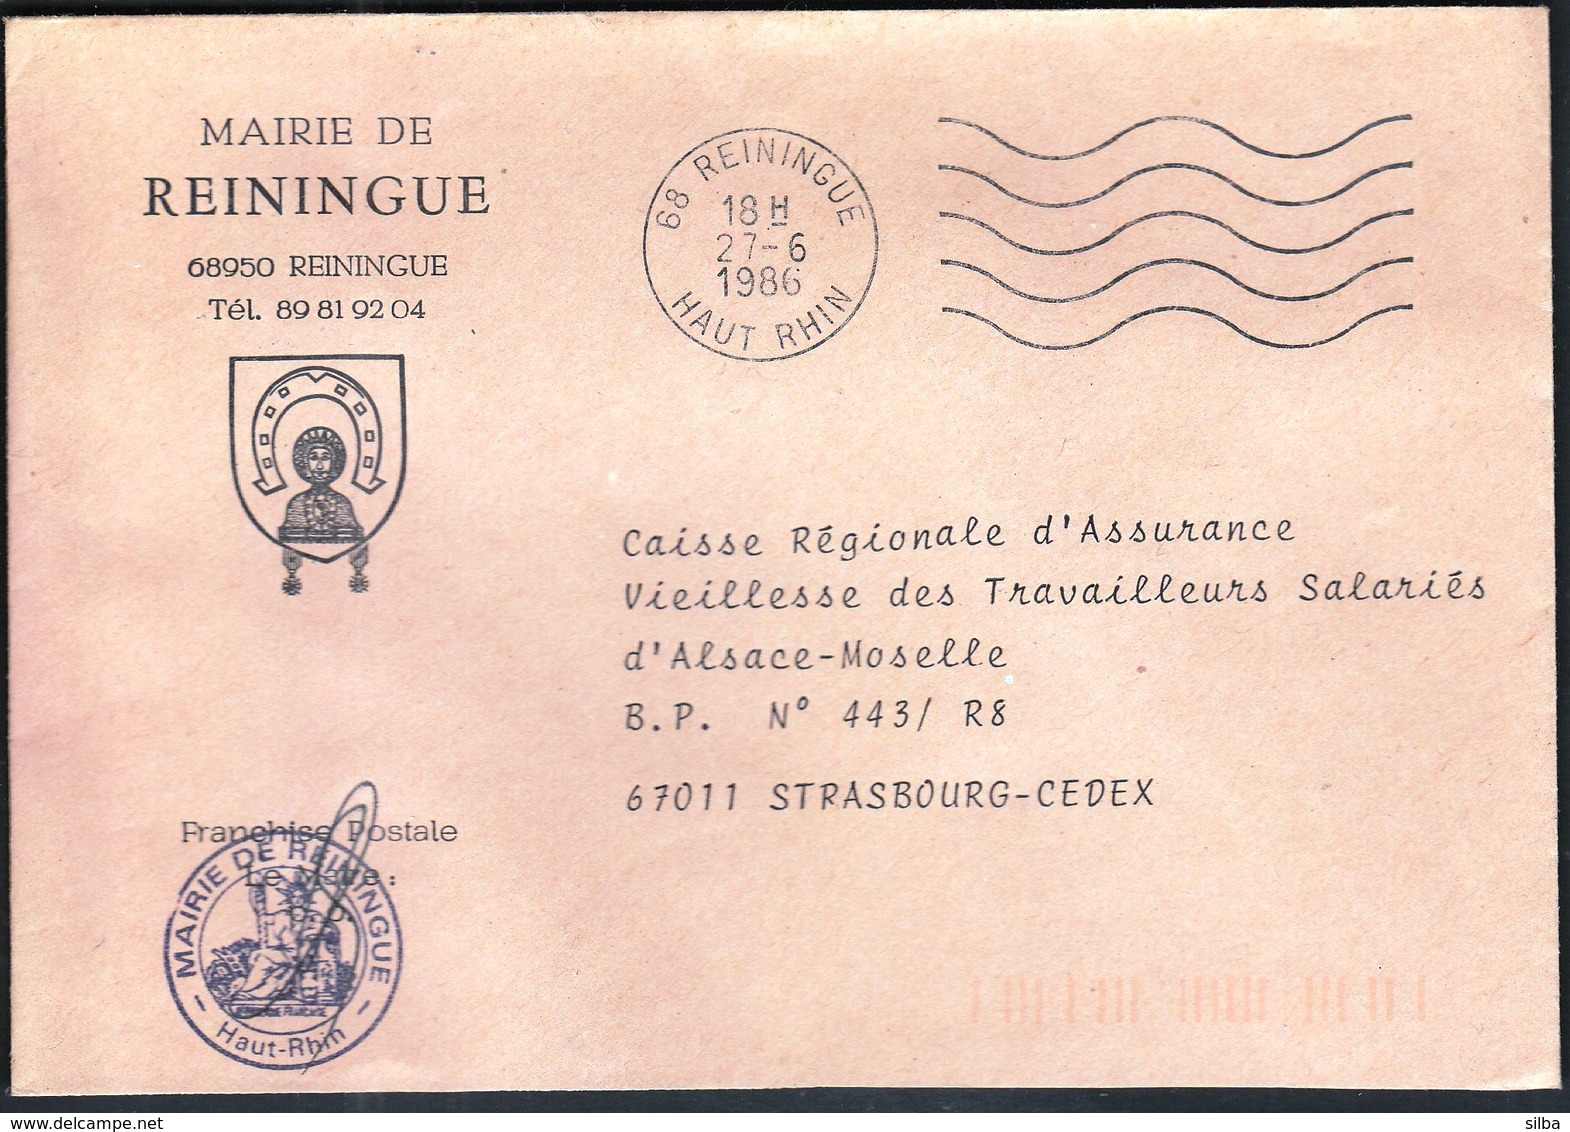 France Reiningue 1986 / Mairie De Reiningue / Coat Of Arms / Horseshoe - 1961-....